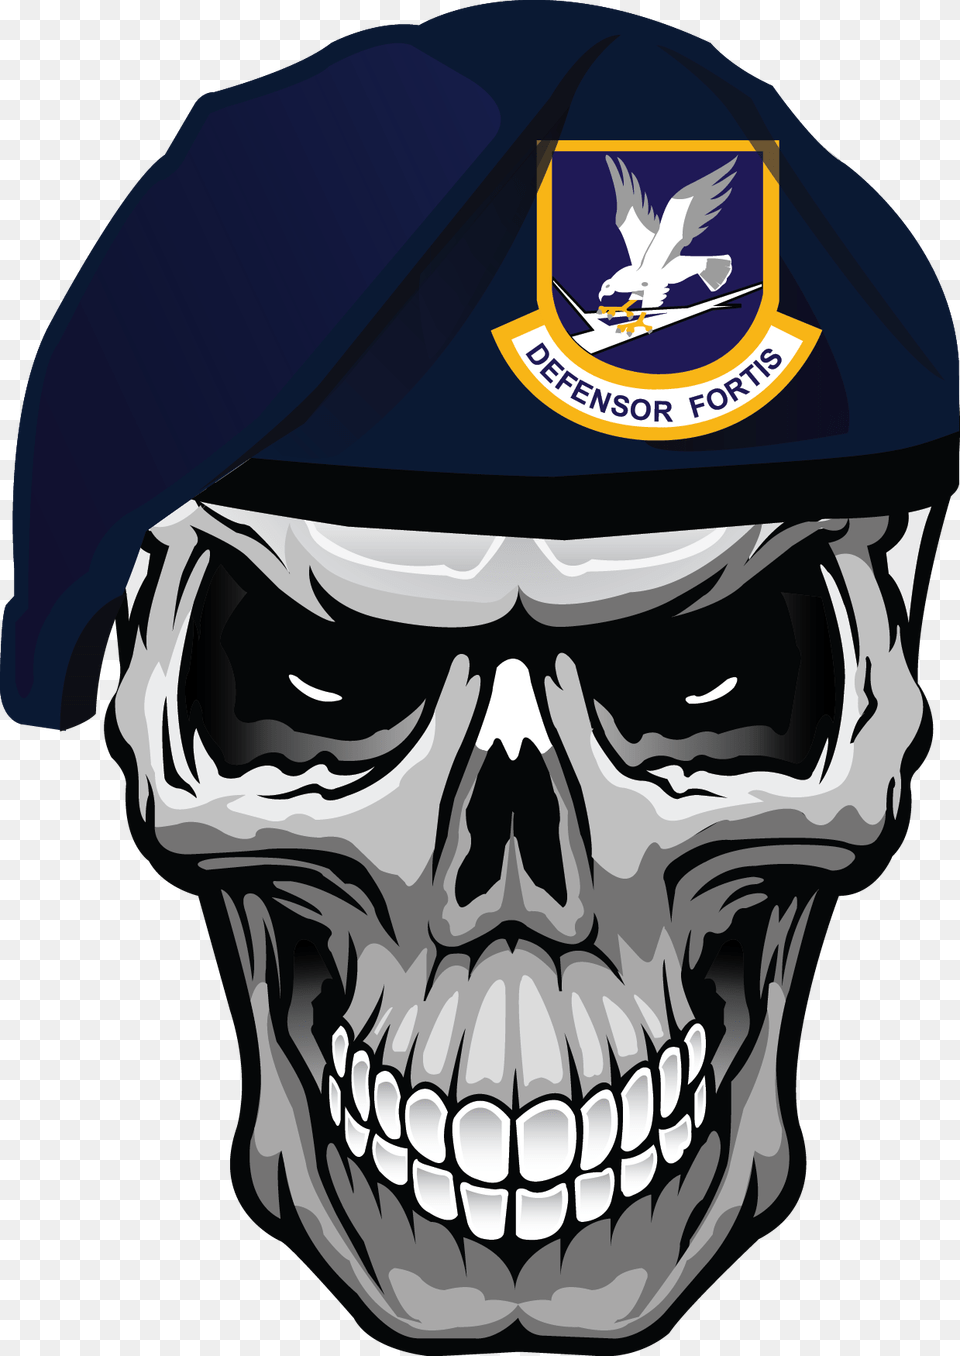 Clip Art Caveira Tattoo Security Forces Skull Beret, Hat, Cap, Clothing, Baseball Cap Free Transparent Png